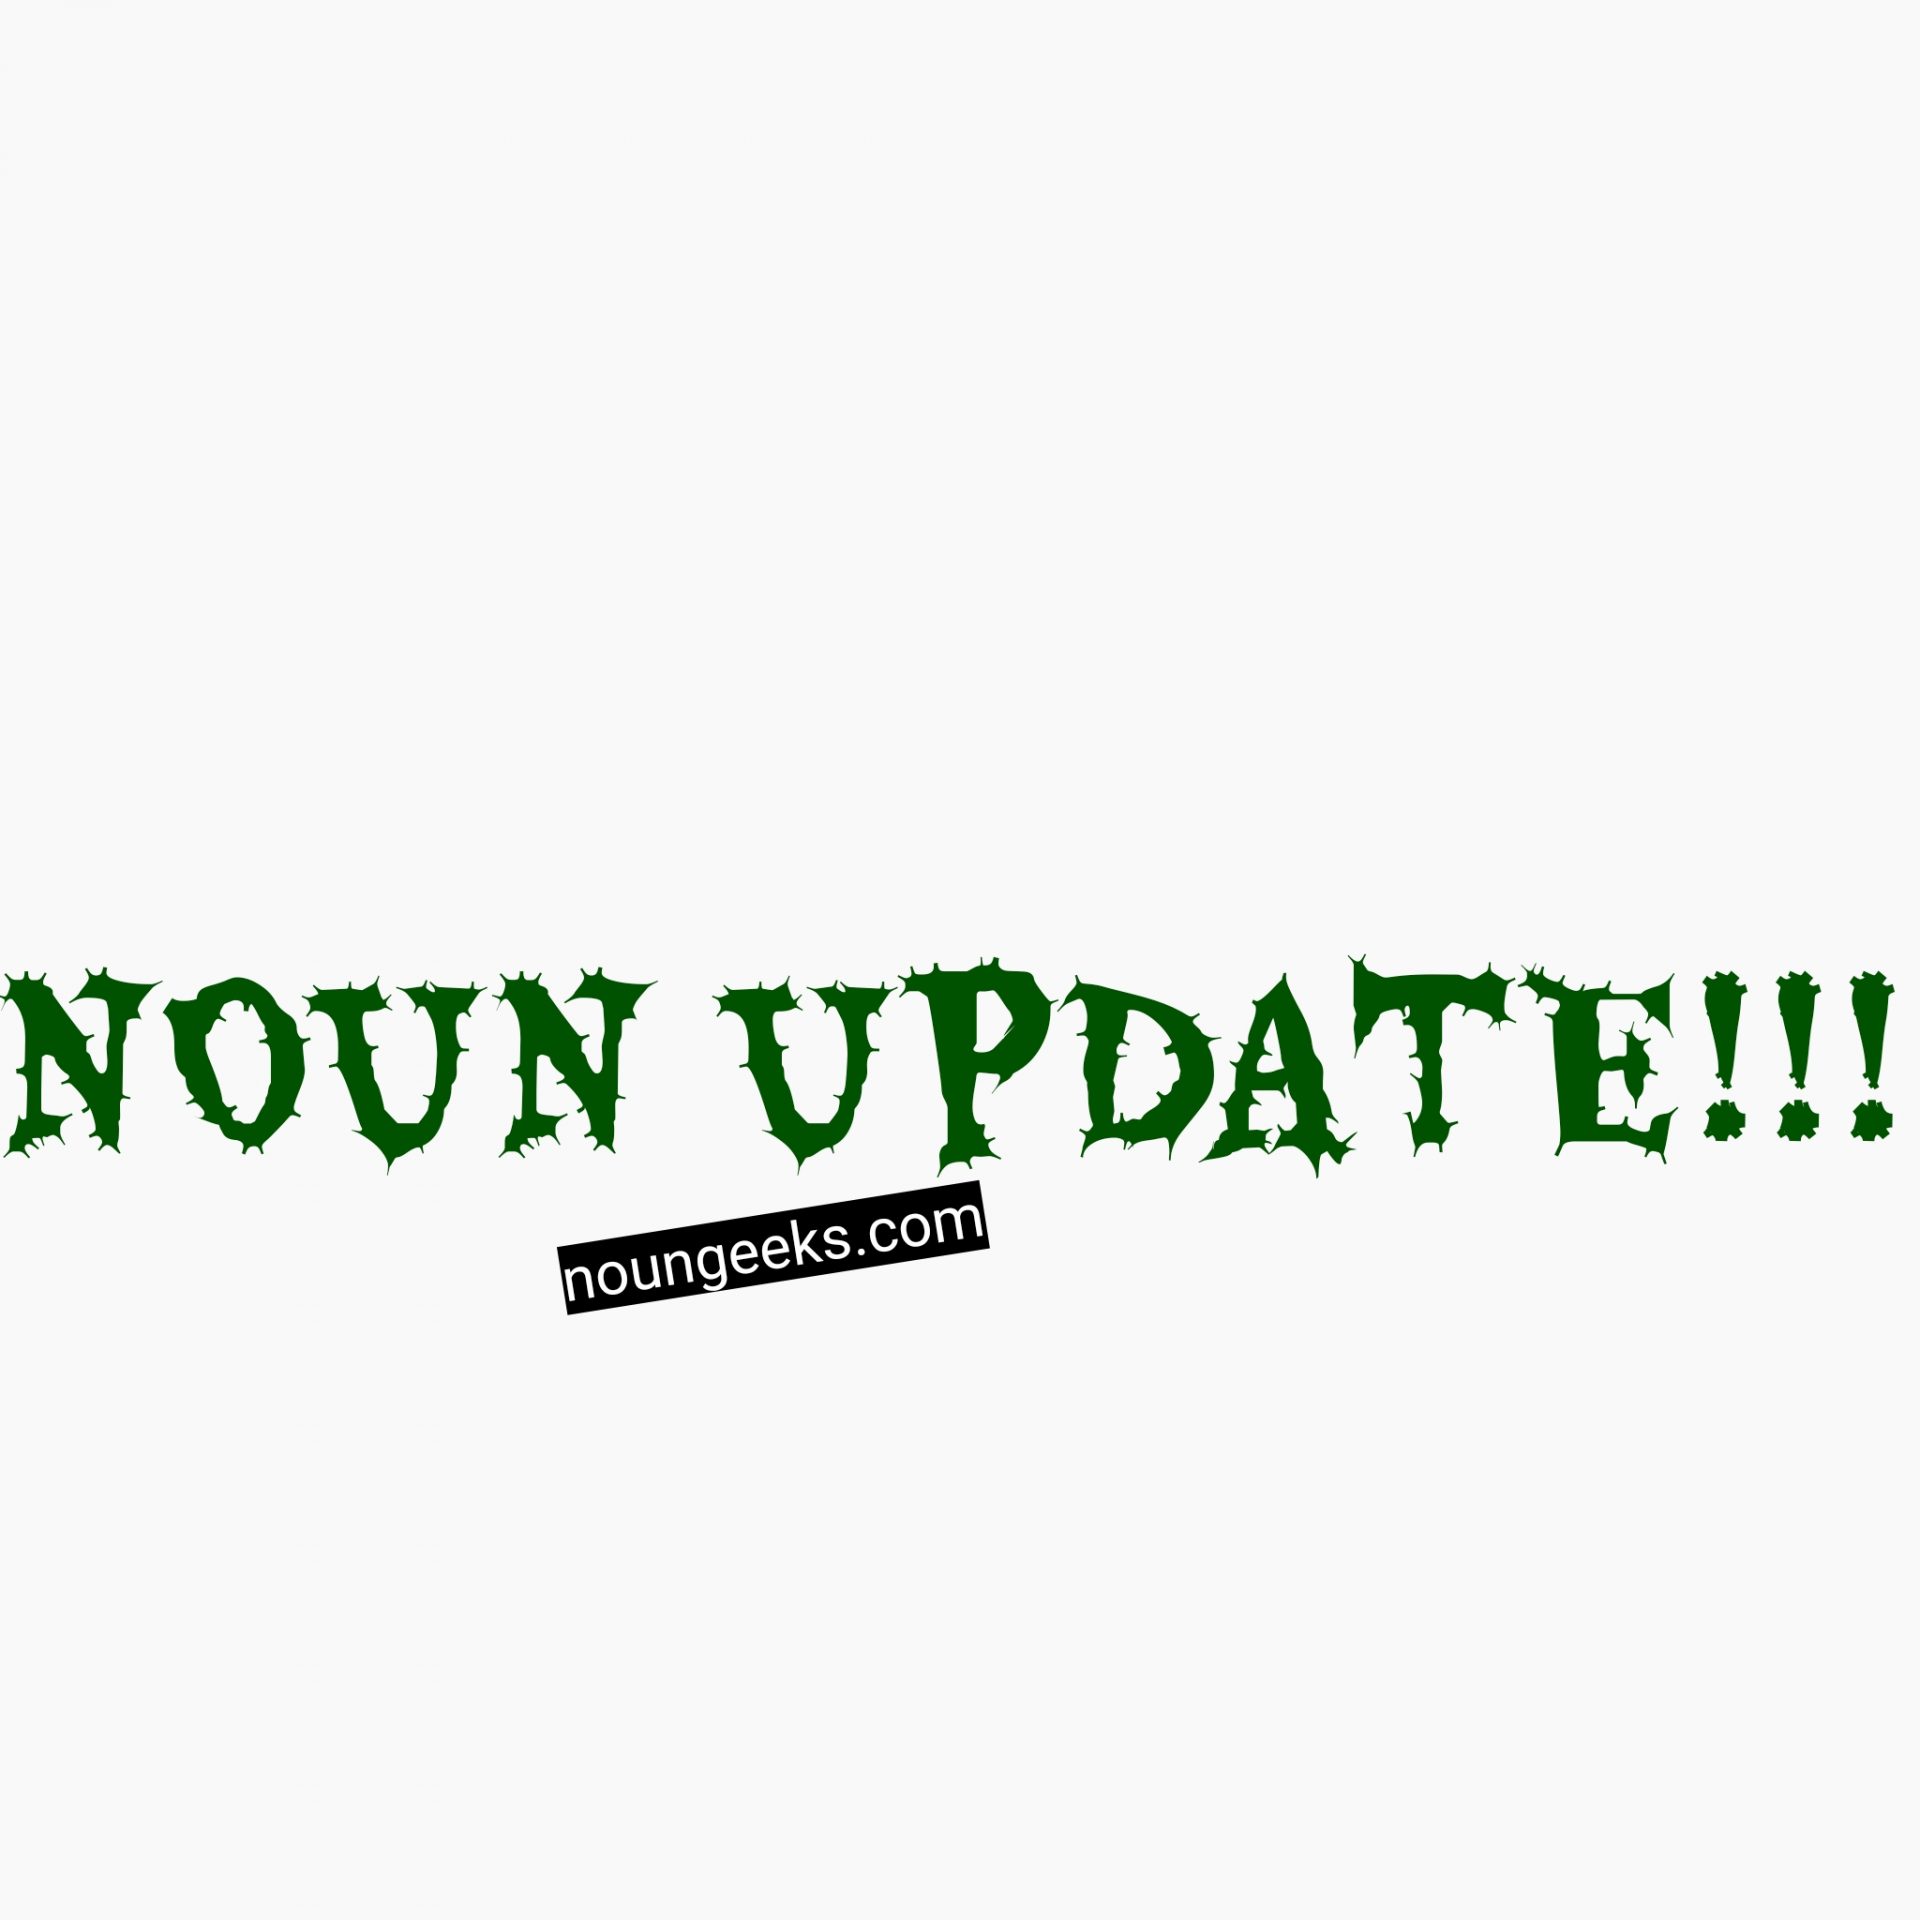 noun update